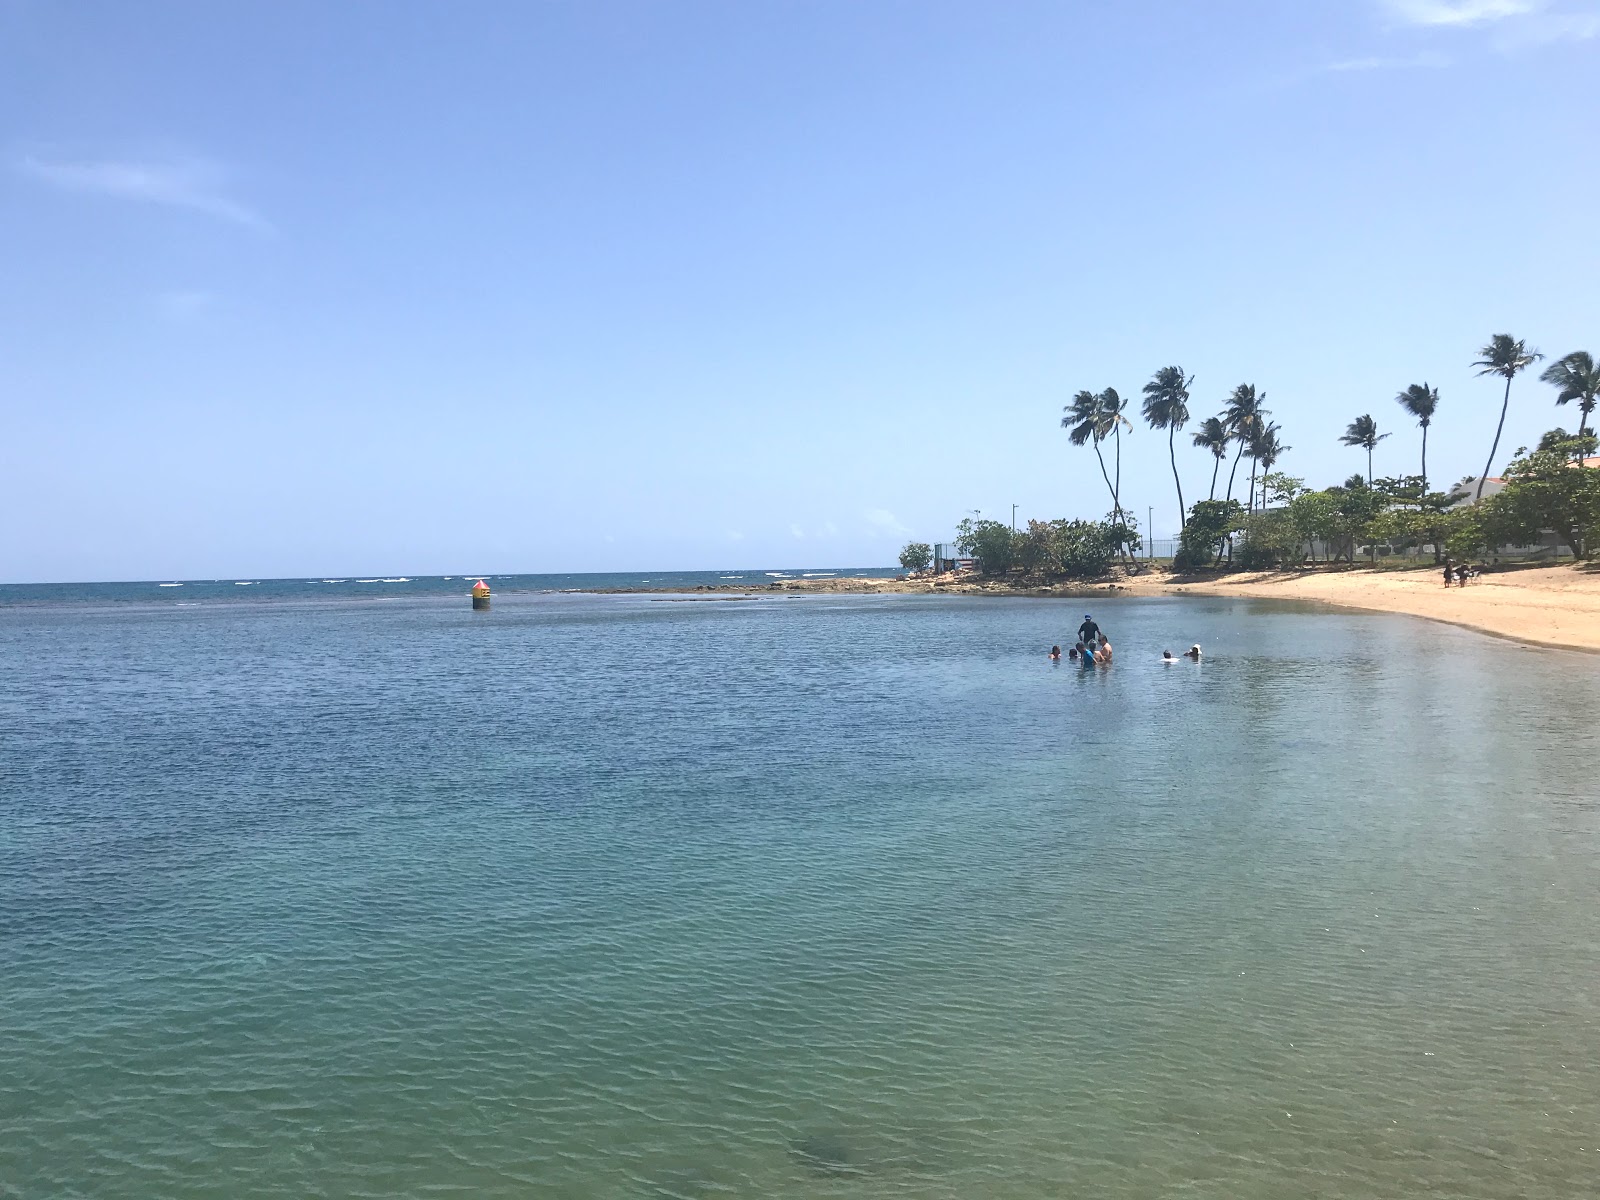 Photo de Playa Dorado del Mar - endroit populaire parmi les connaisseurs de la détente